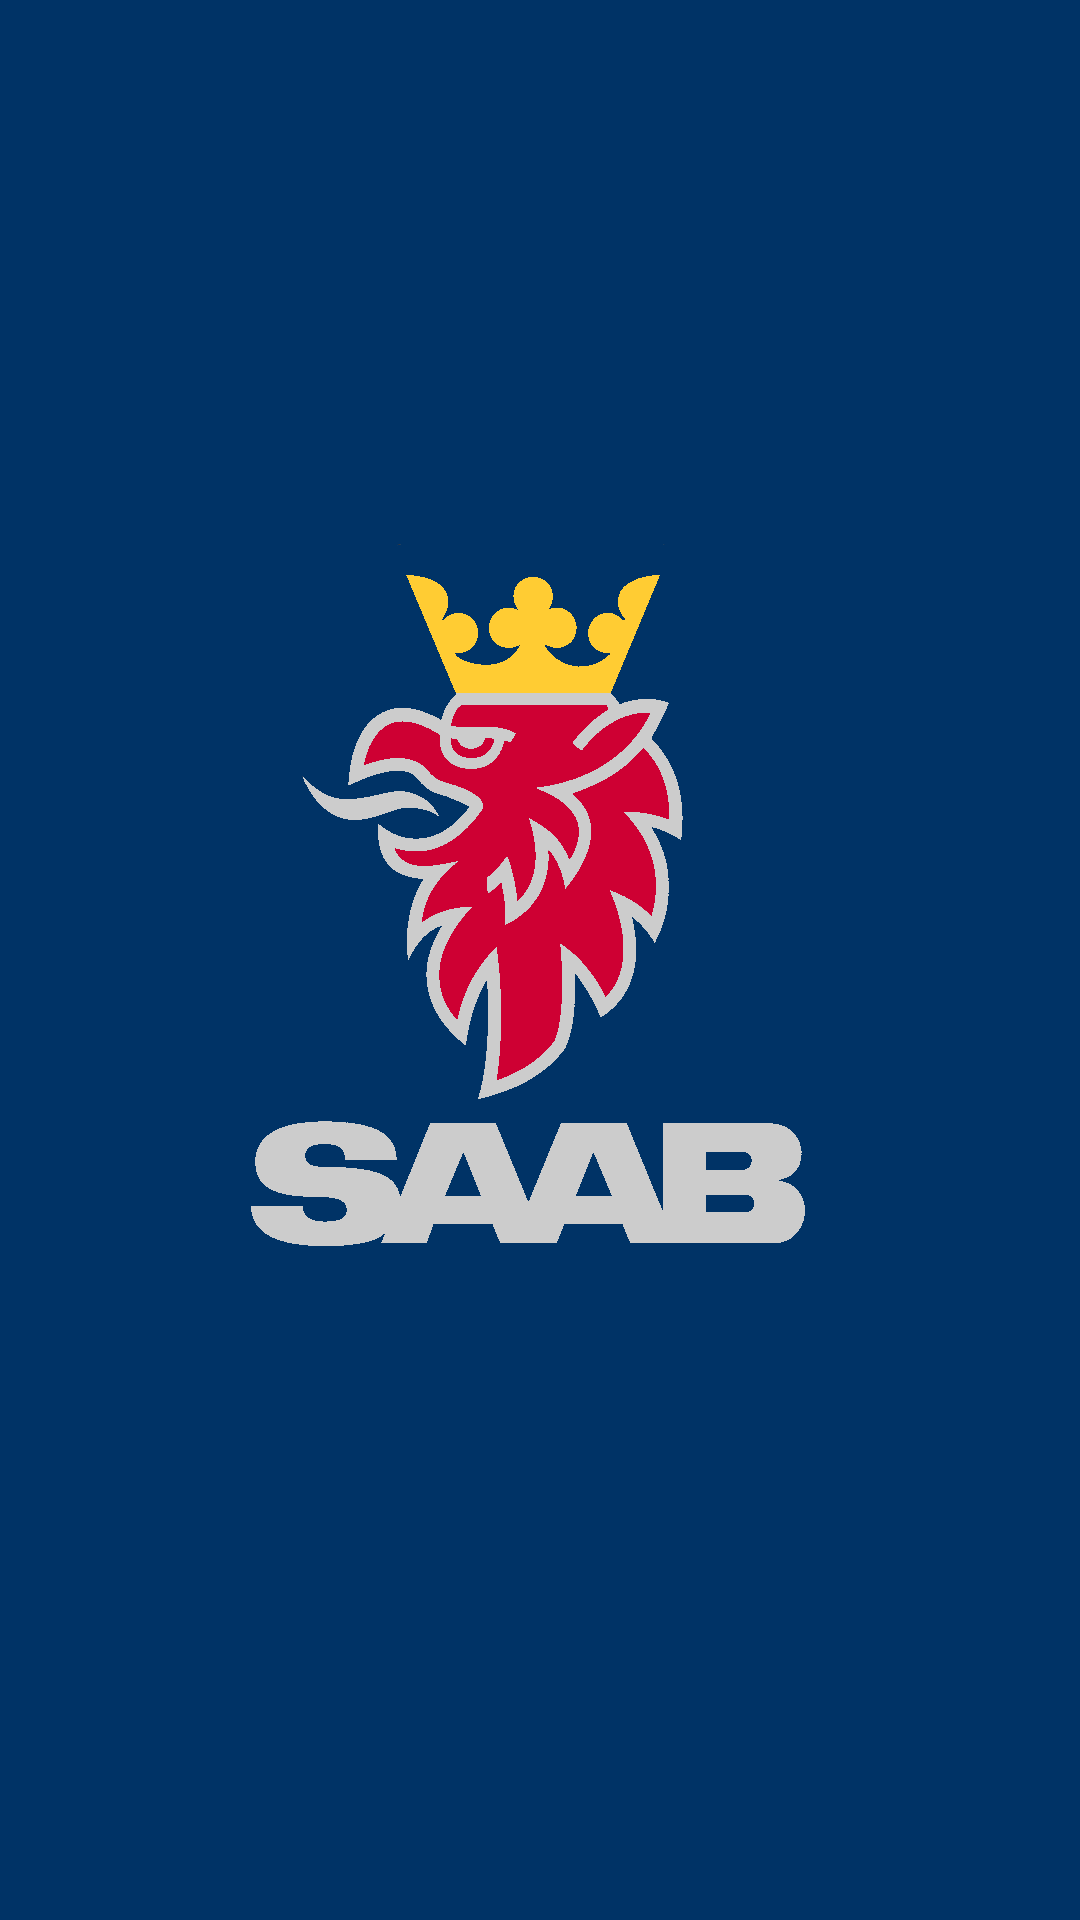 Imgur | Saab Автомобиль Saab Логотипы